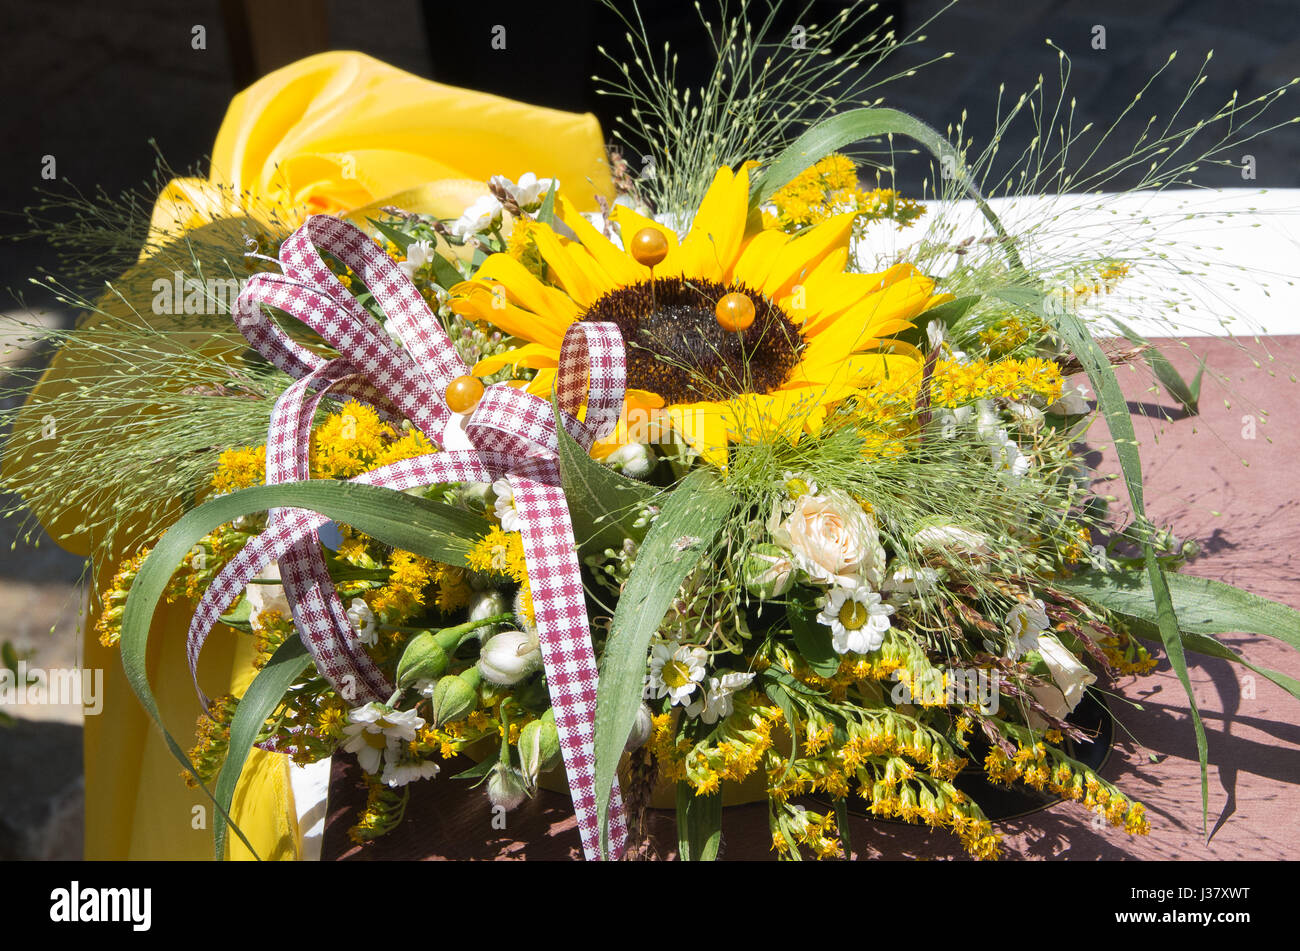 Décoration avec des fleurs. Bouquet de roses, marguerites, de tournesols et de plantes sauvages Banque D'Images